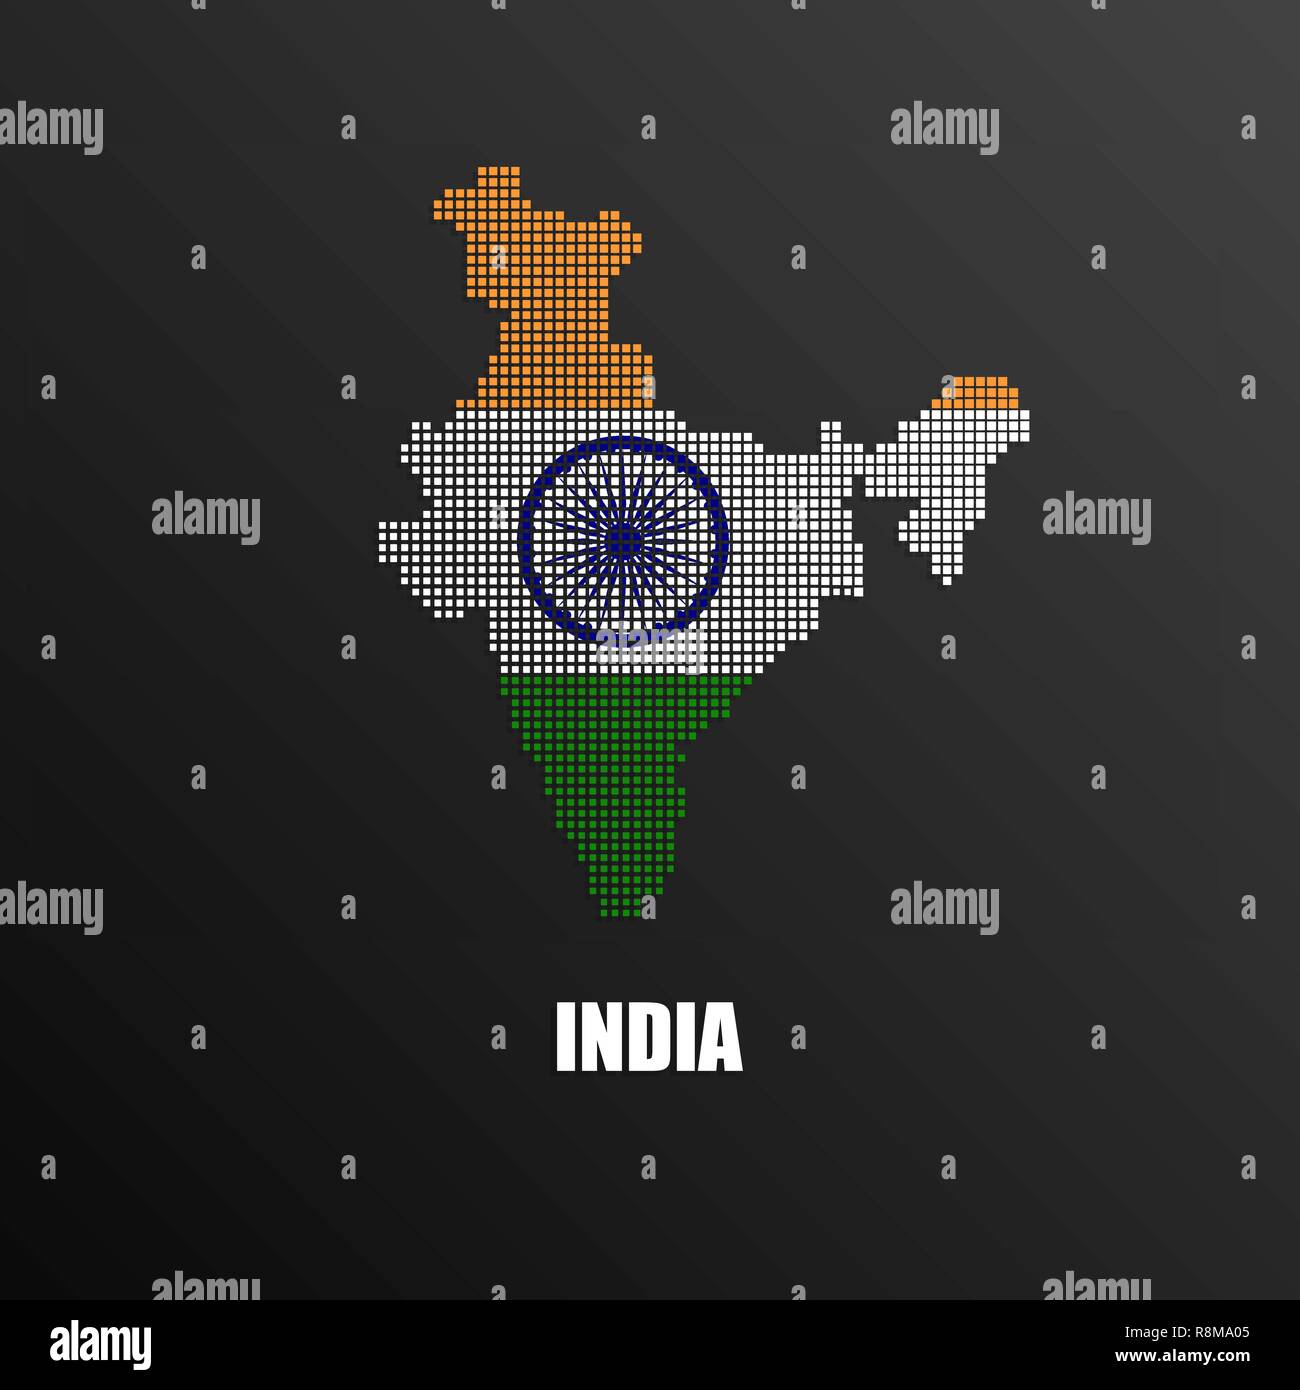 Ilustraci N Vectorial De Abstract Halftone Mapa De India Hecha De